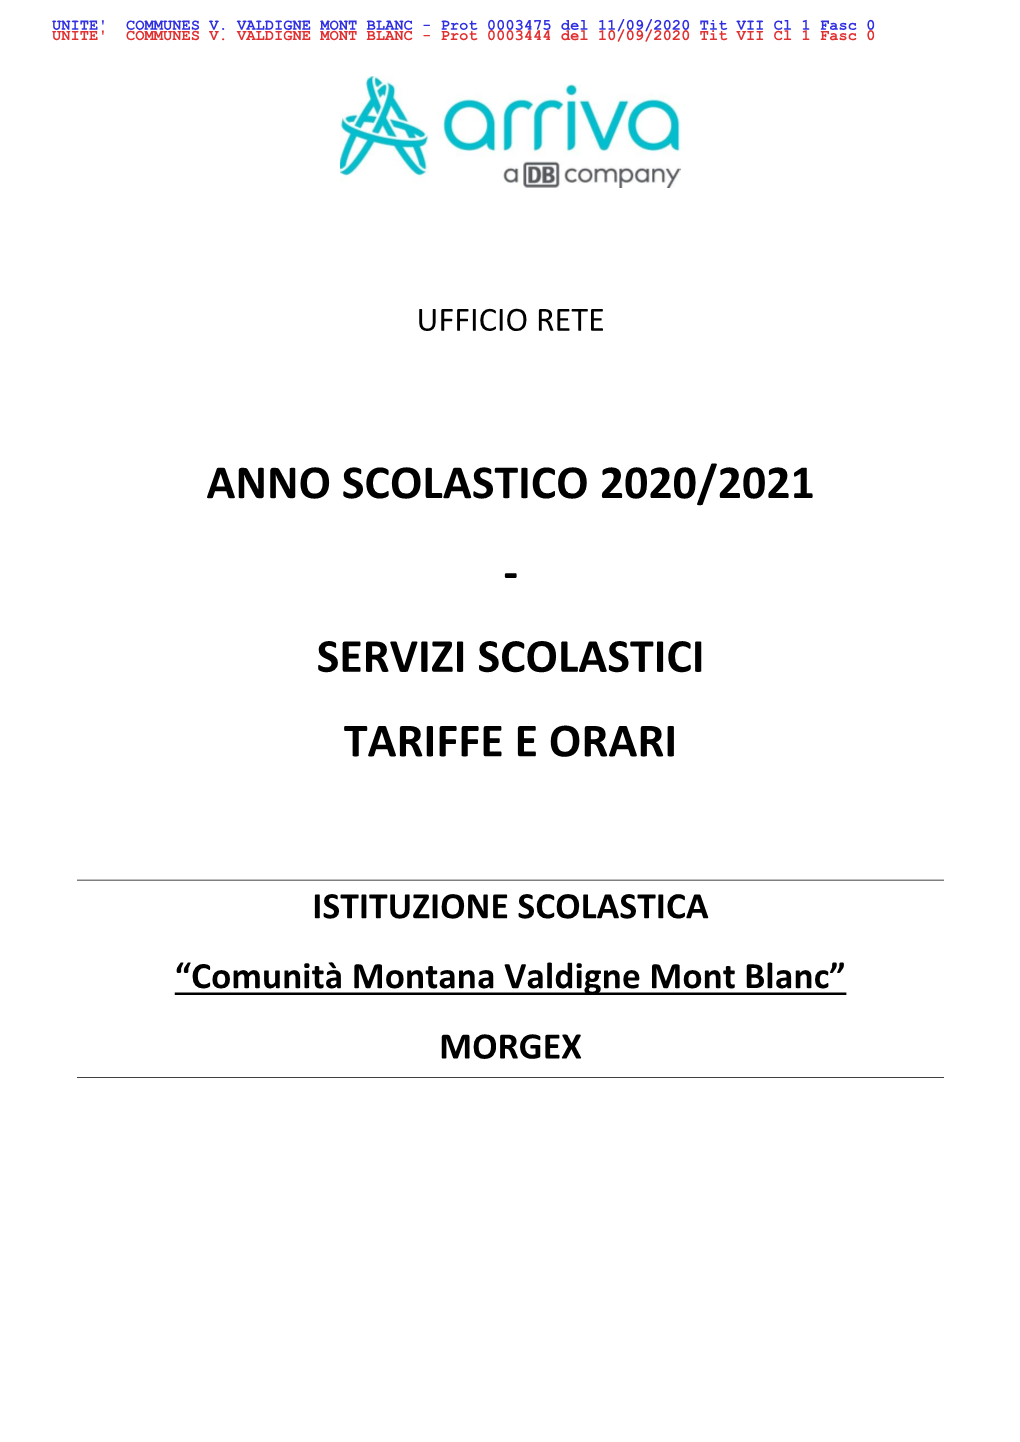 Anno Scolastico 2020/2021 - Servizi Scolastici Tariffe E Orari